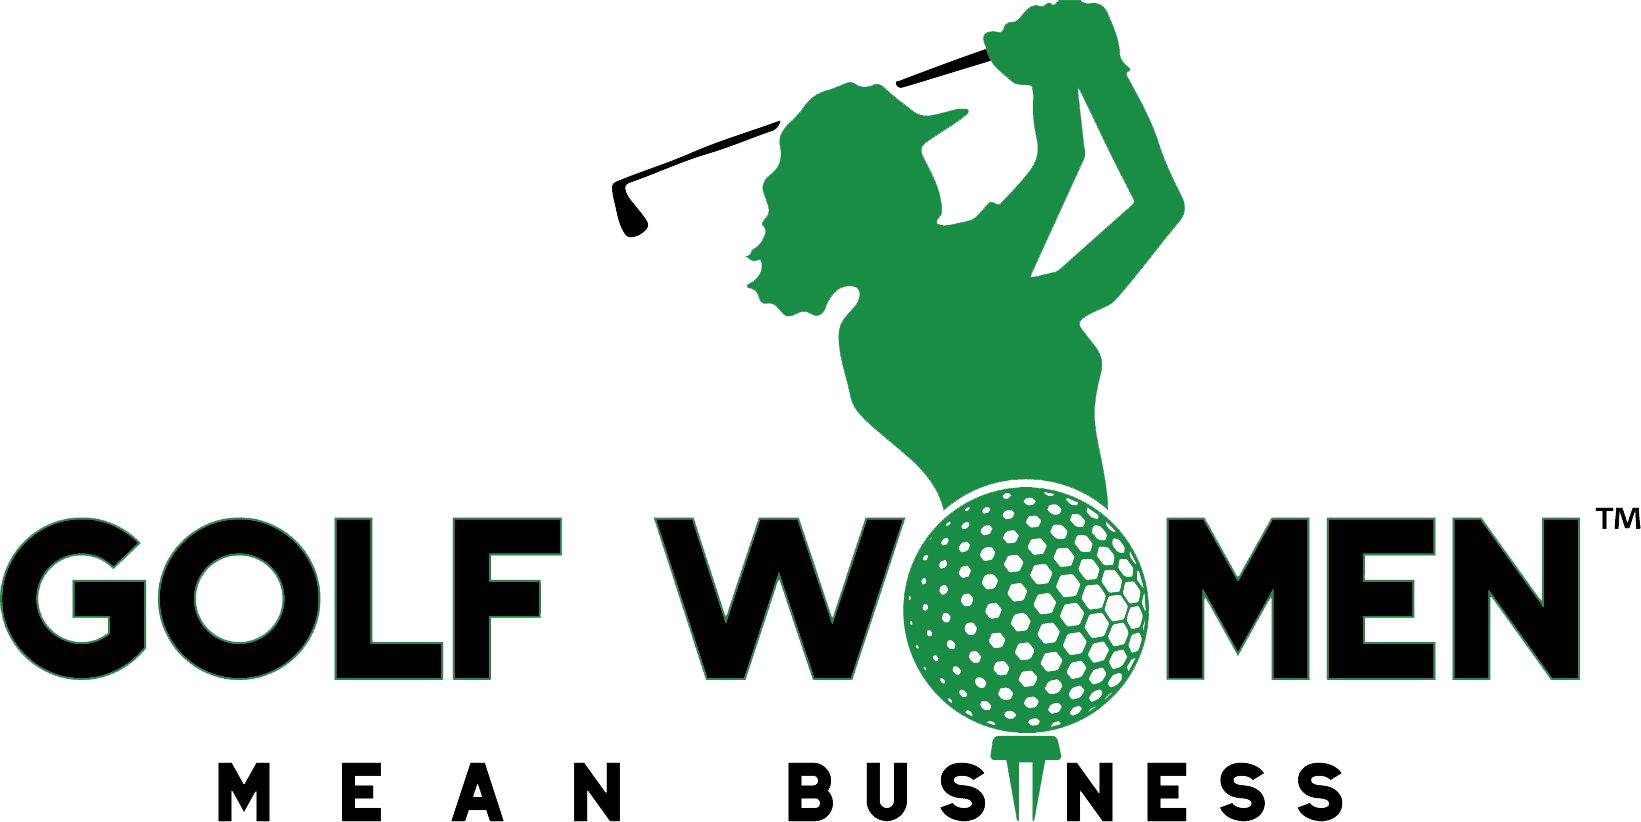 Golf Women Mean Business (1641x822)